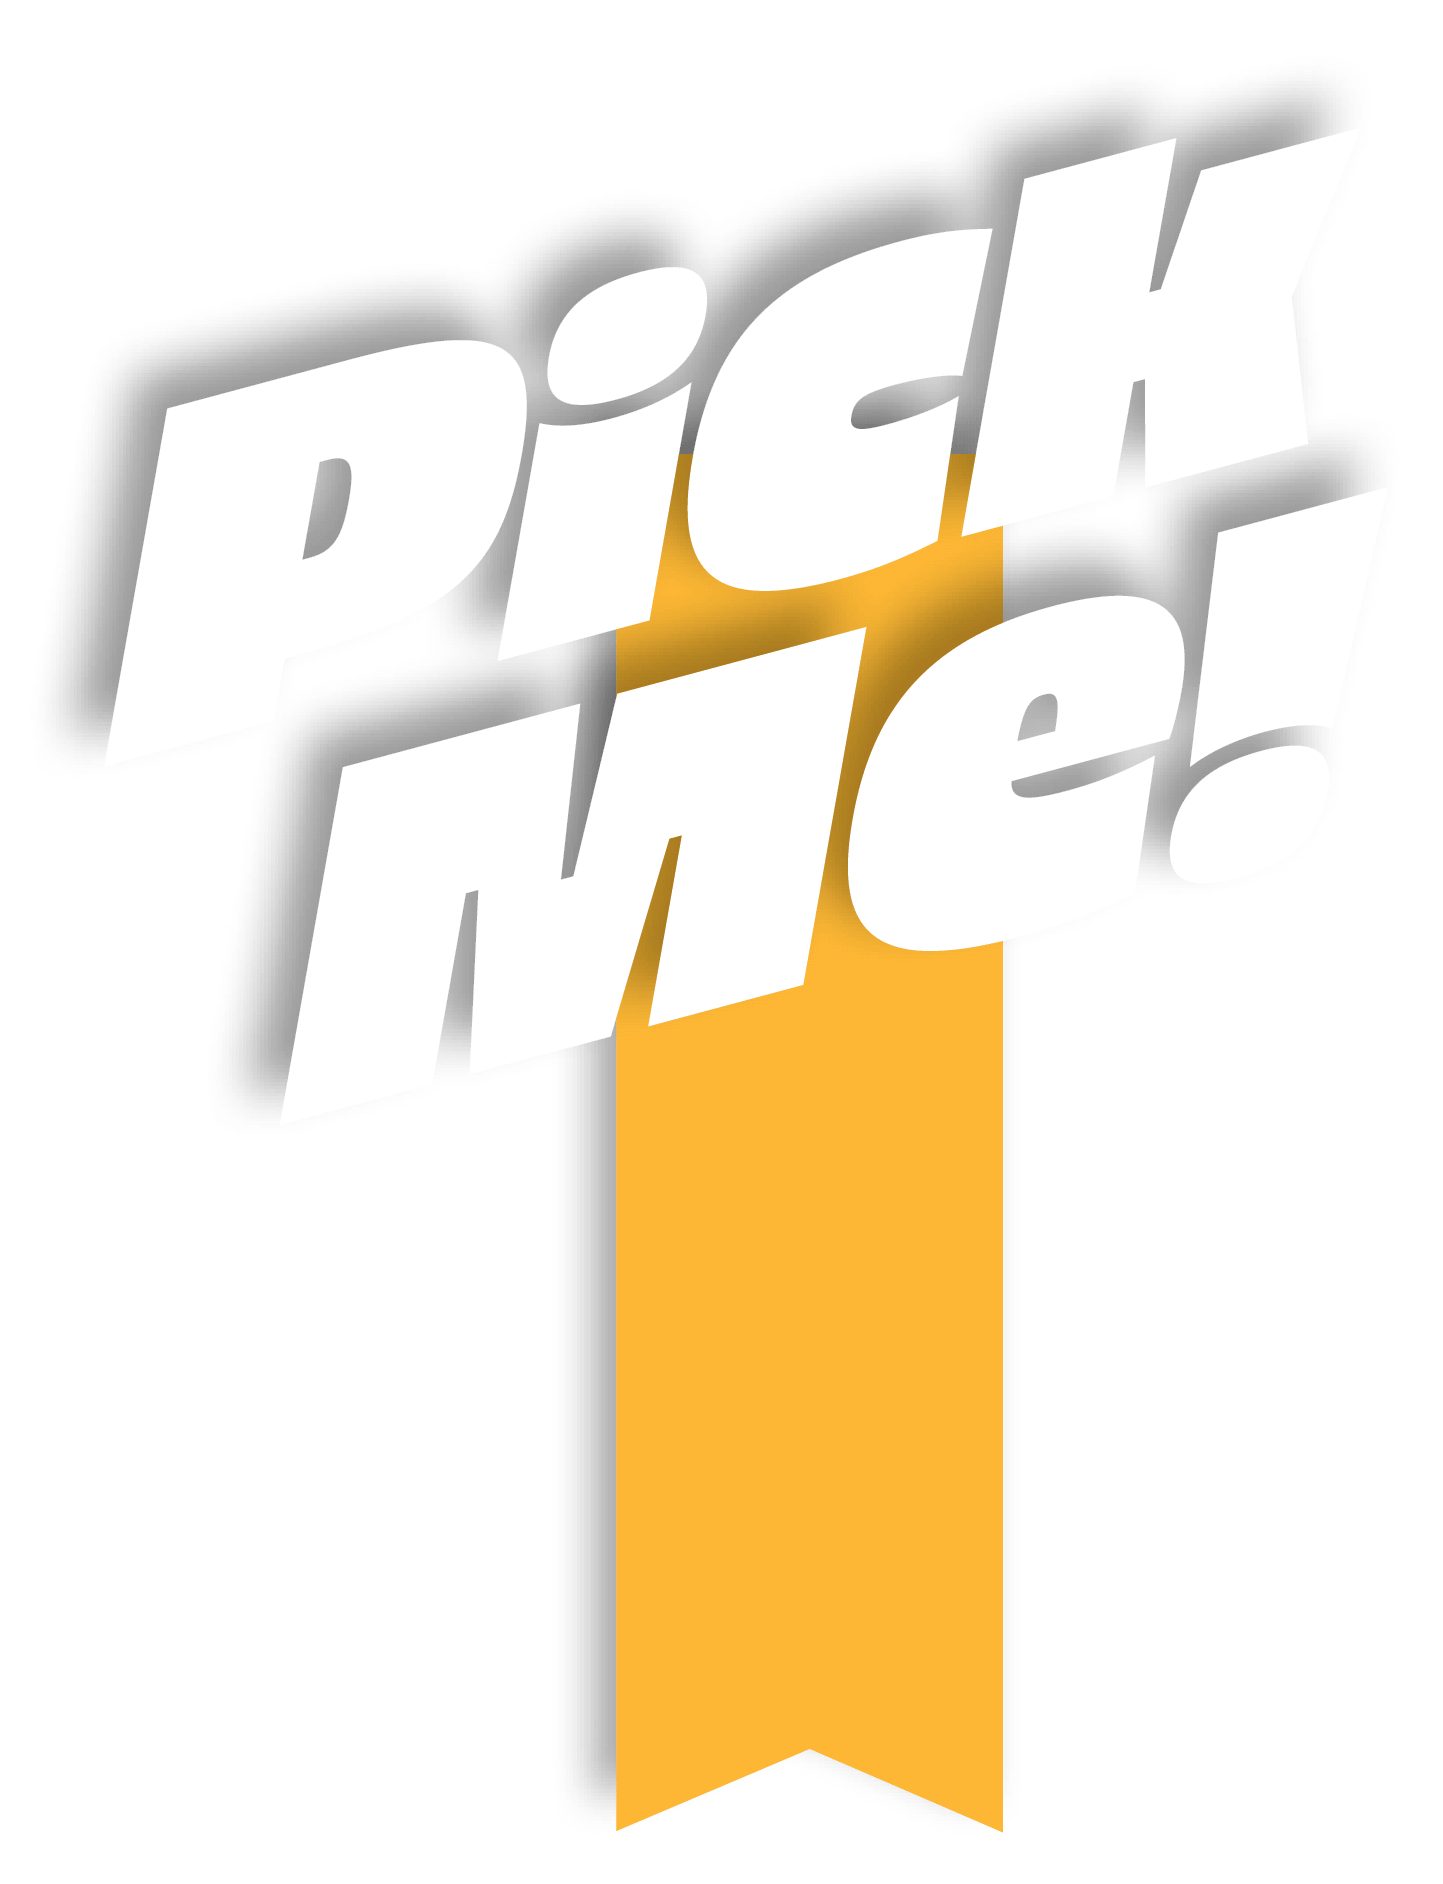 Pick Me!